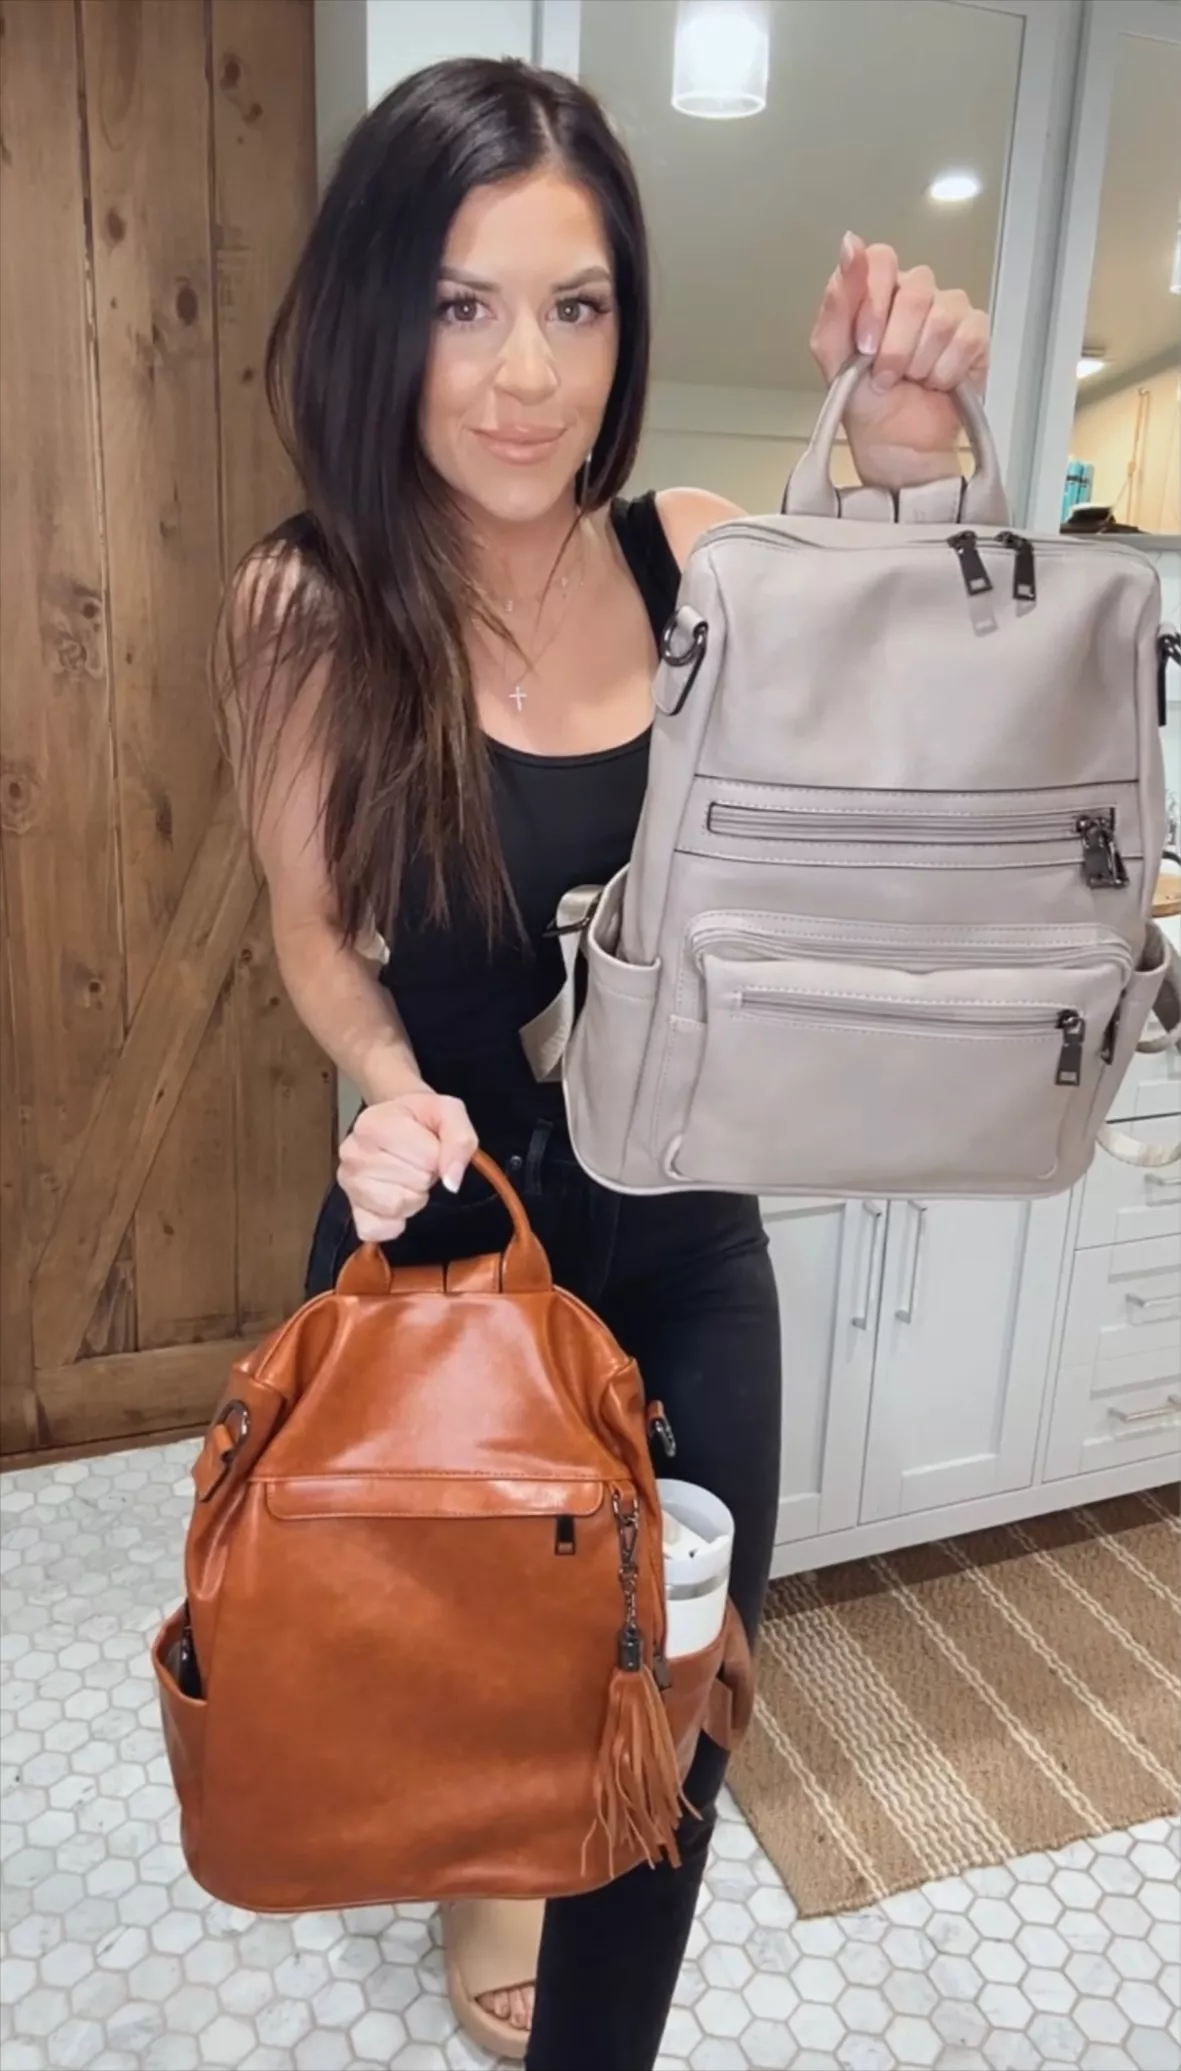 Telena Womens Backpack Purse Vegan Leather Large Travel Backpack College  Shoulder Bag with Tassel